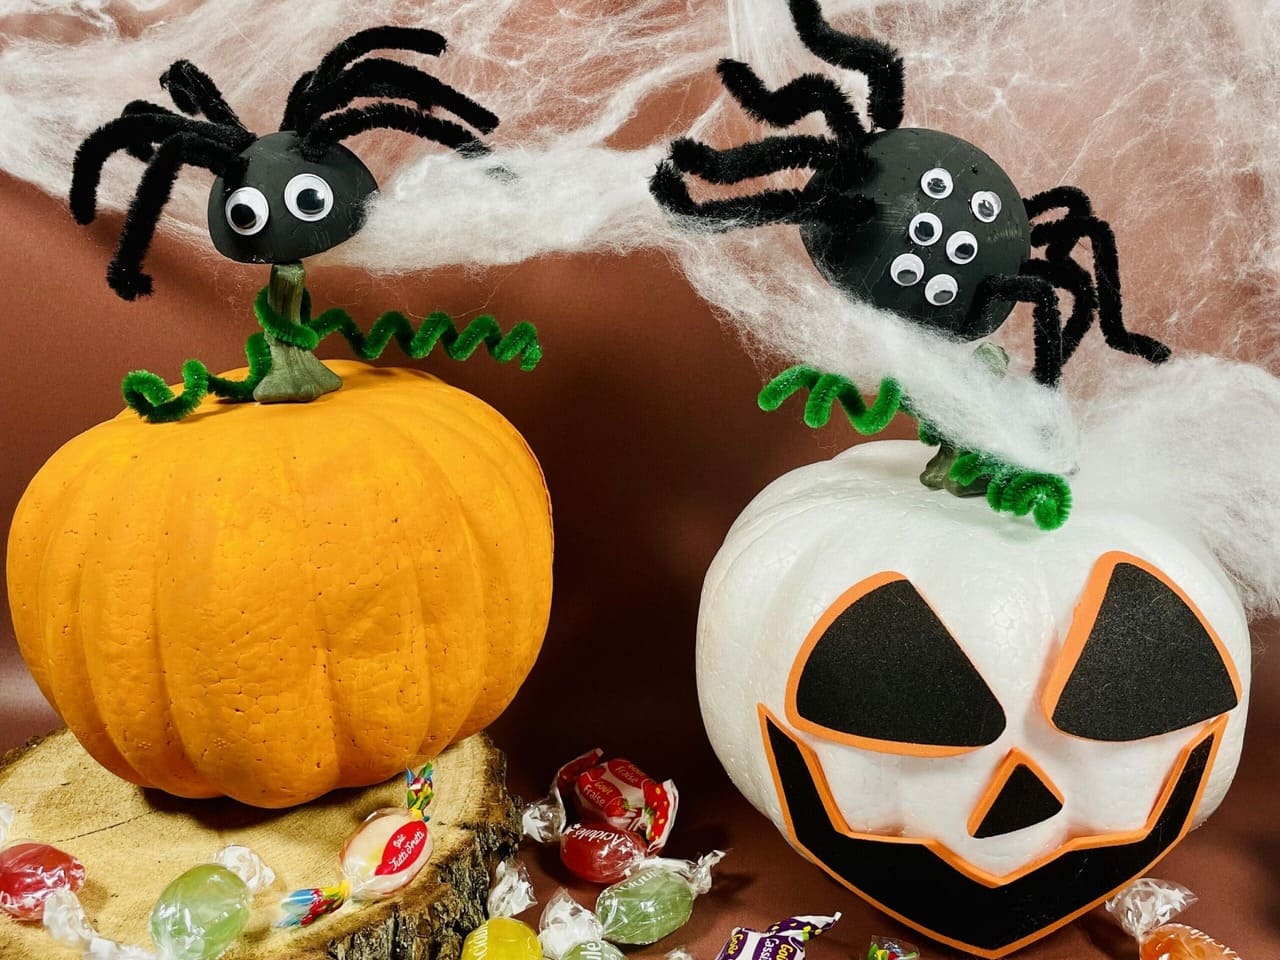 DIY activité créative enfant : créer une déco d'Halloween simple et pas cher